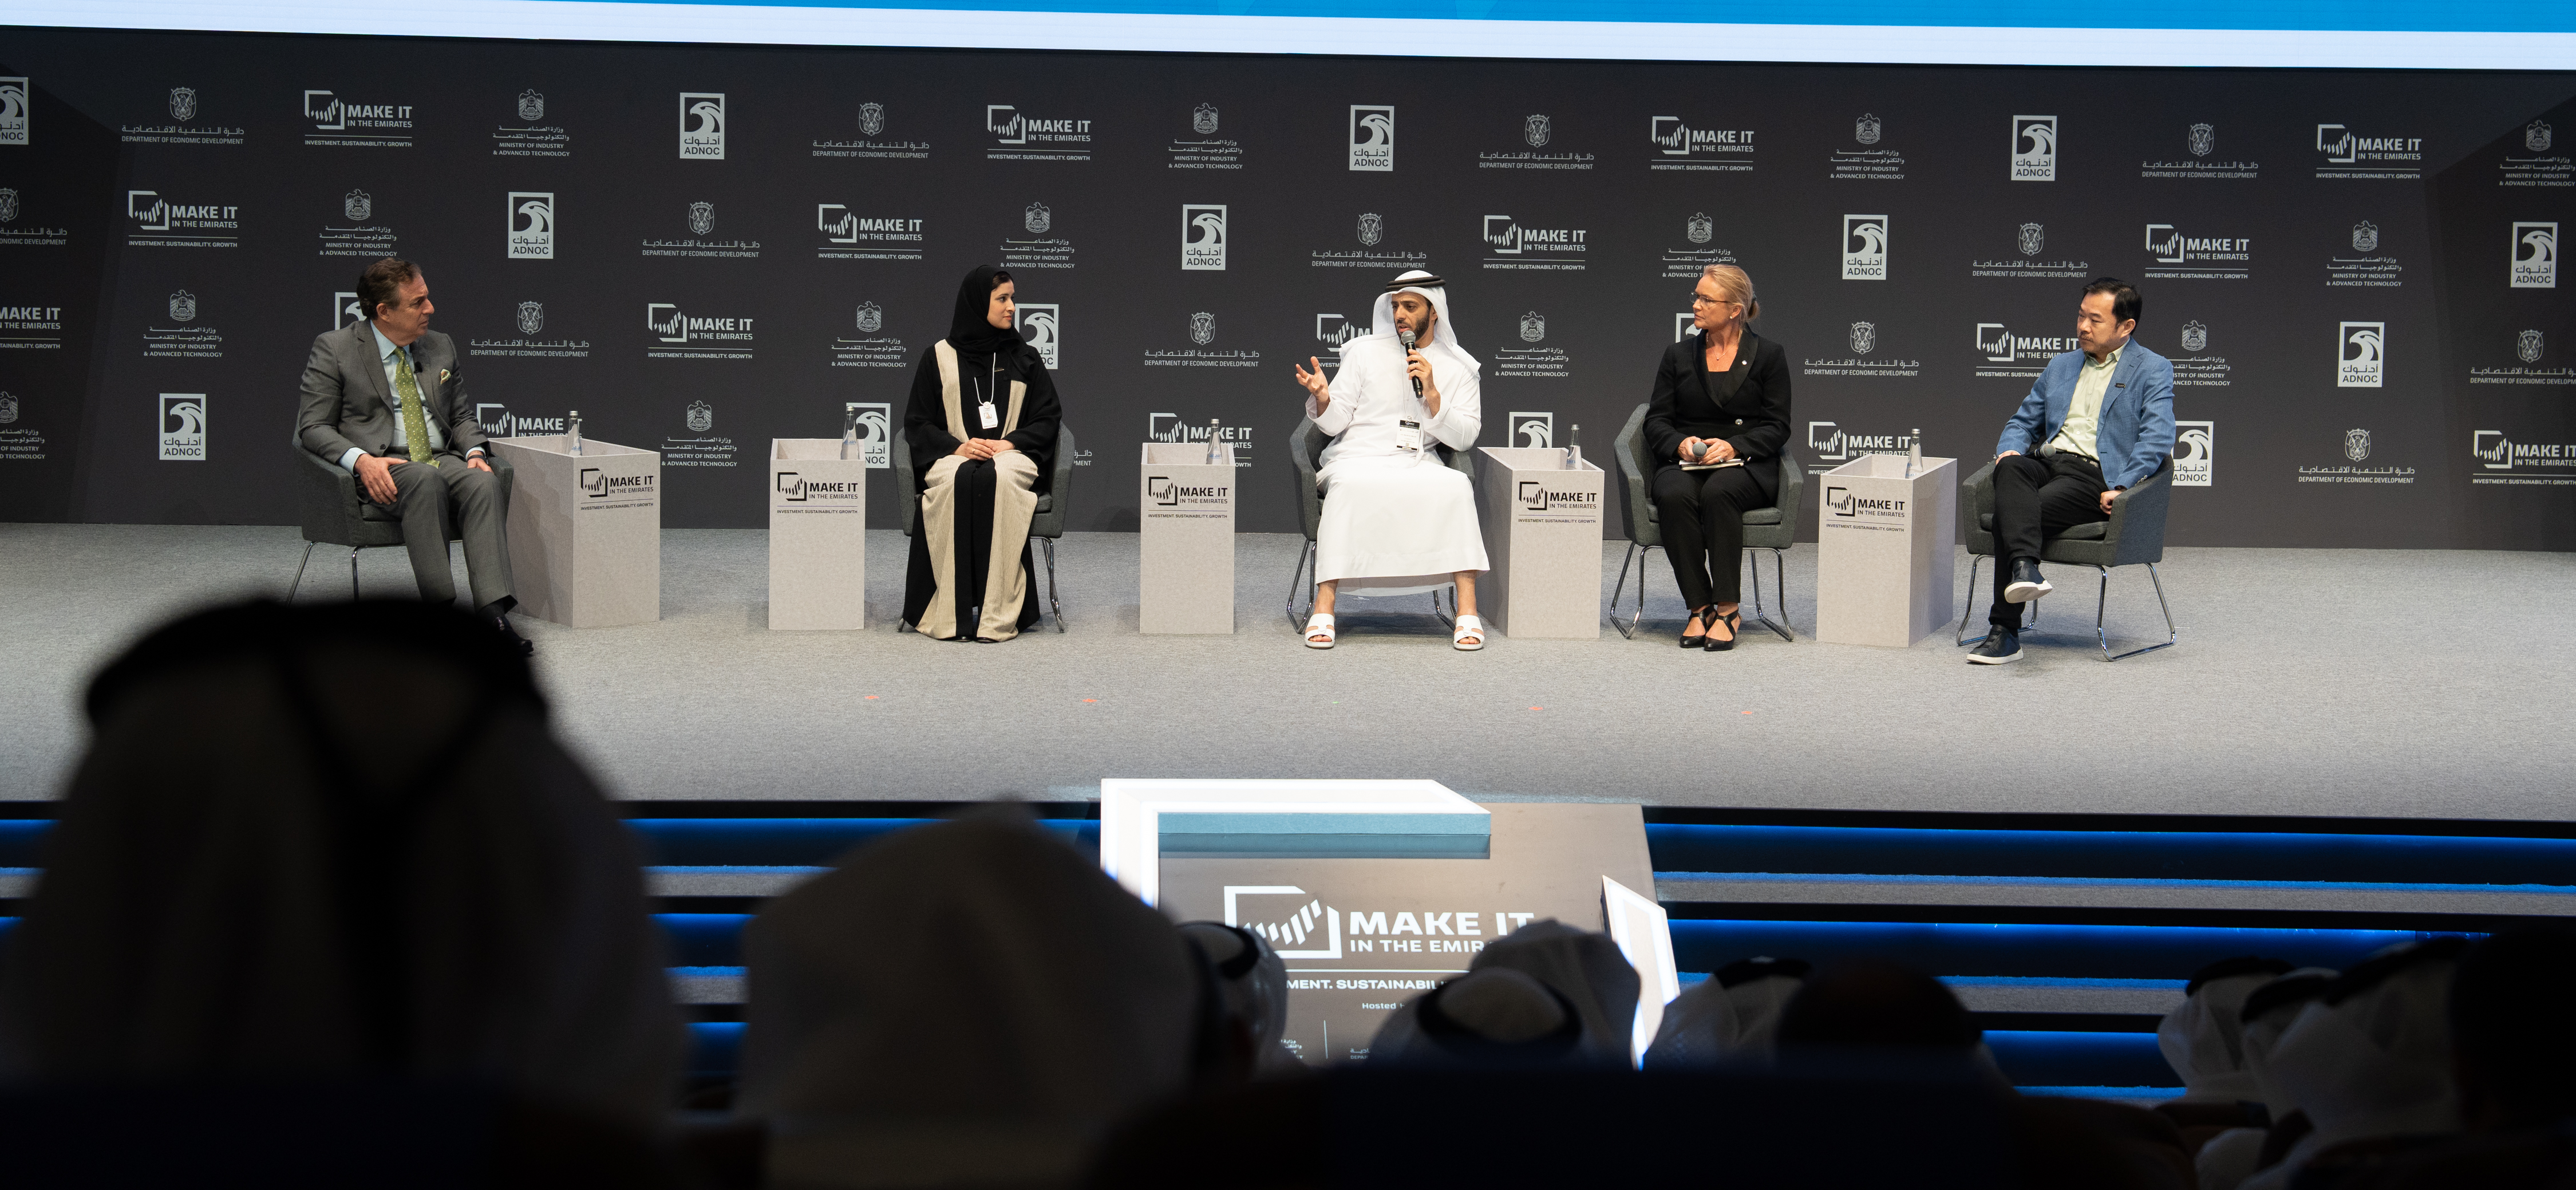 برنامج القيمة الوطنية المضافة يدعم جهود دولة الإمارات في تحقيق التنمية الاقتصادية المستدامة وتعزيز جاذبيتها الاستثمارية 